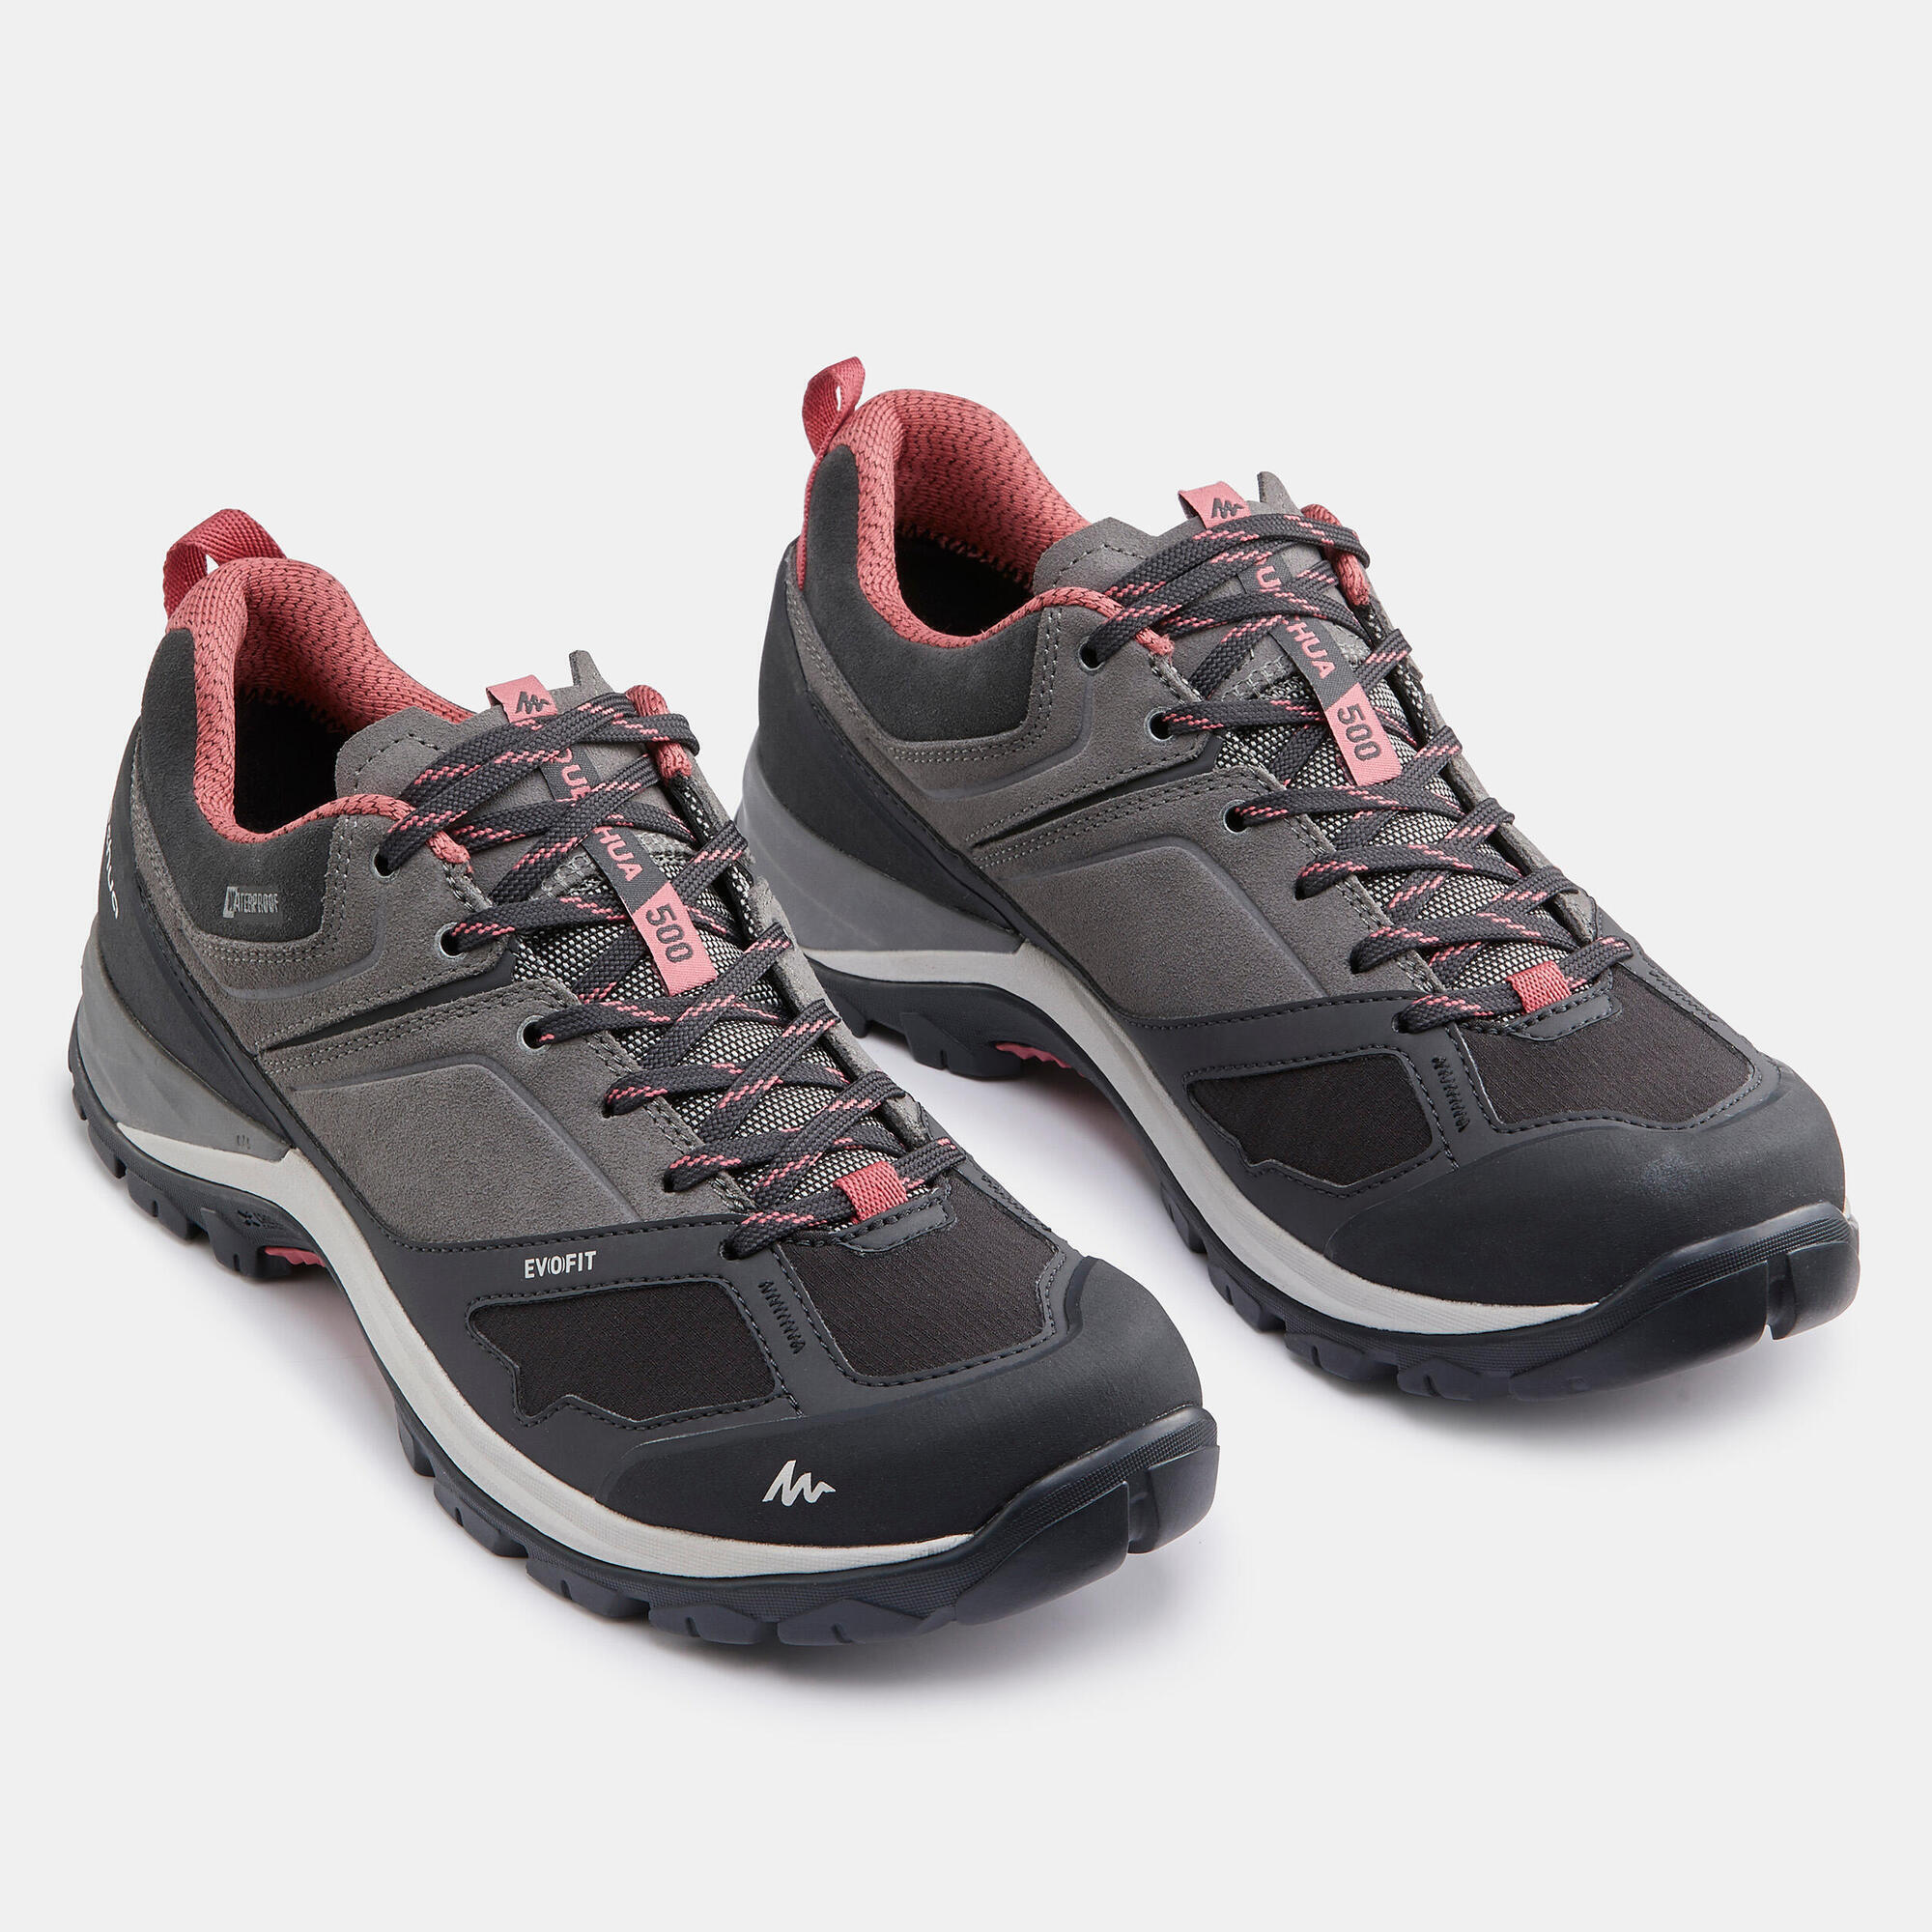 Women's Mountain Walking Waterproof Shoes - MH500 - pink/grey 5/7